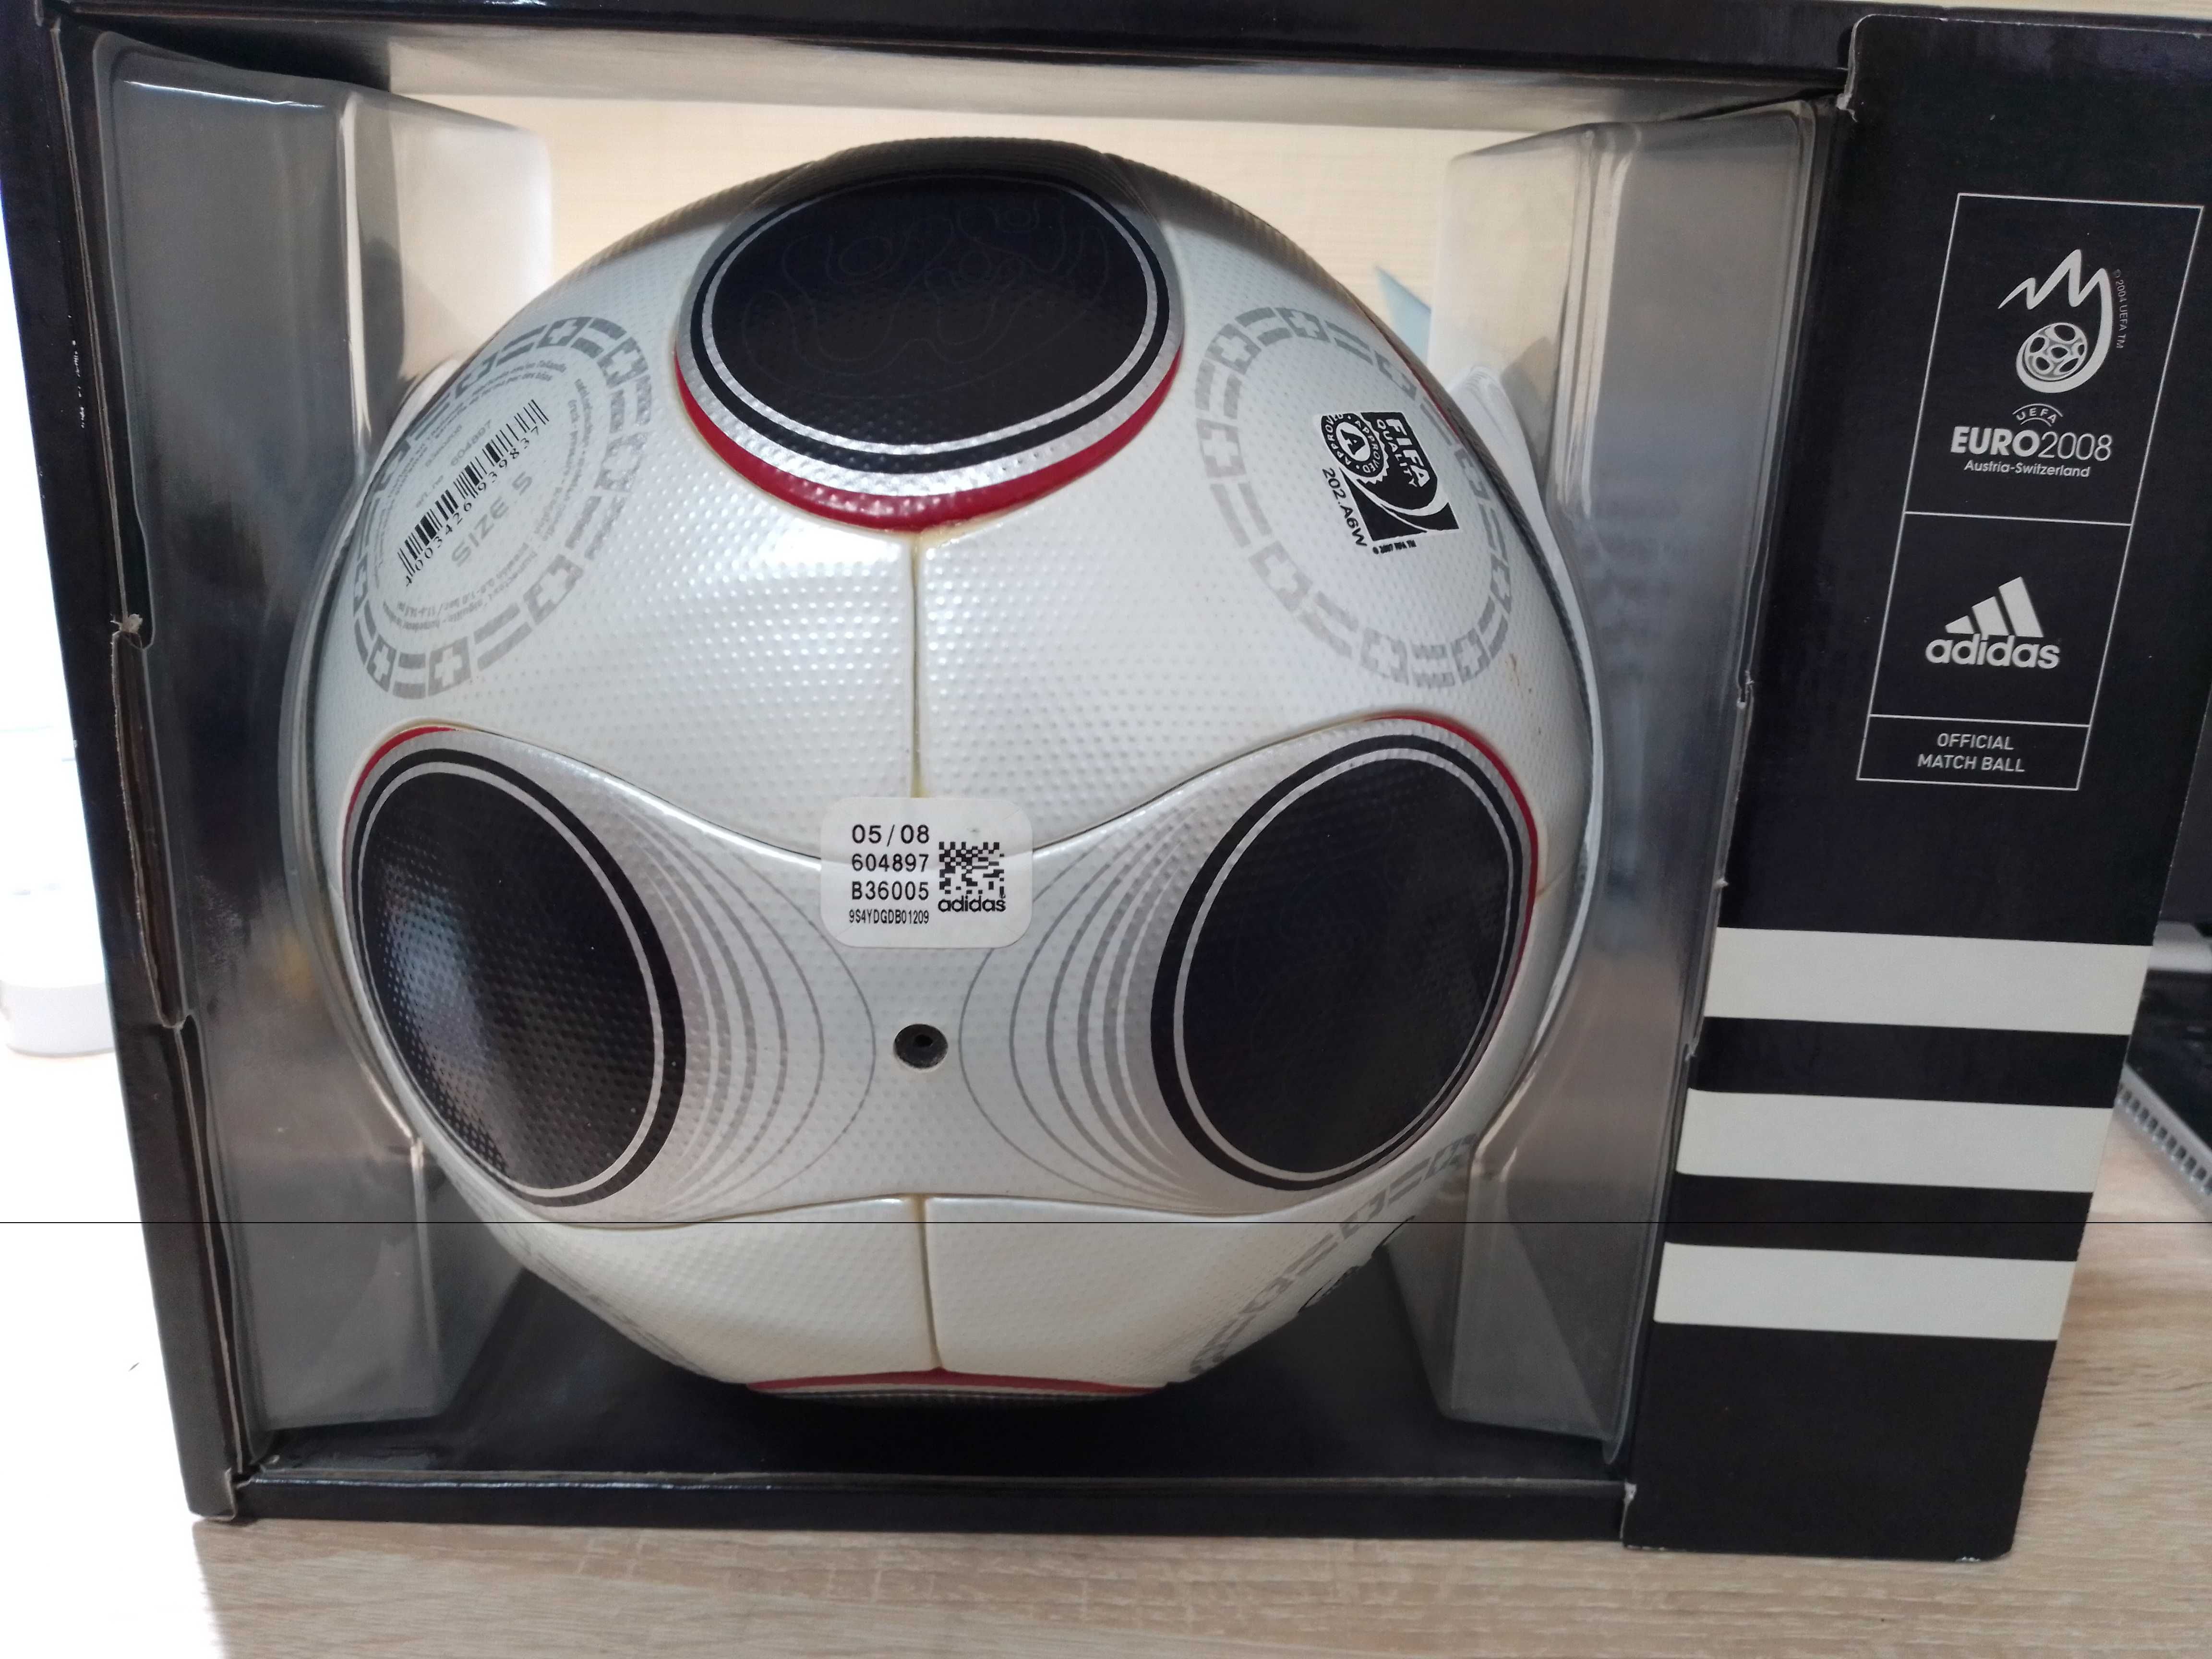 Футбольный Мяч Adidas UEFA Euro 2008 EUROPASS in BOX (Новый)